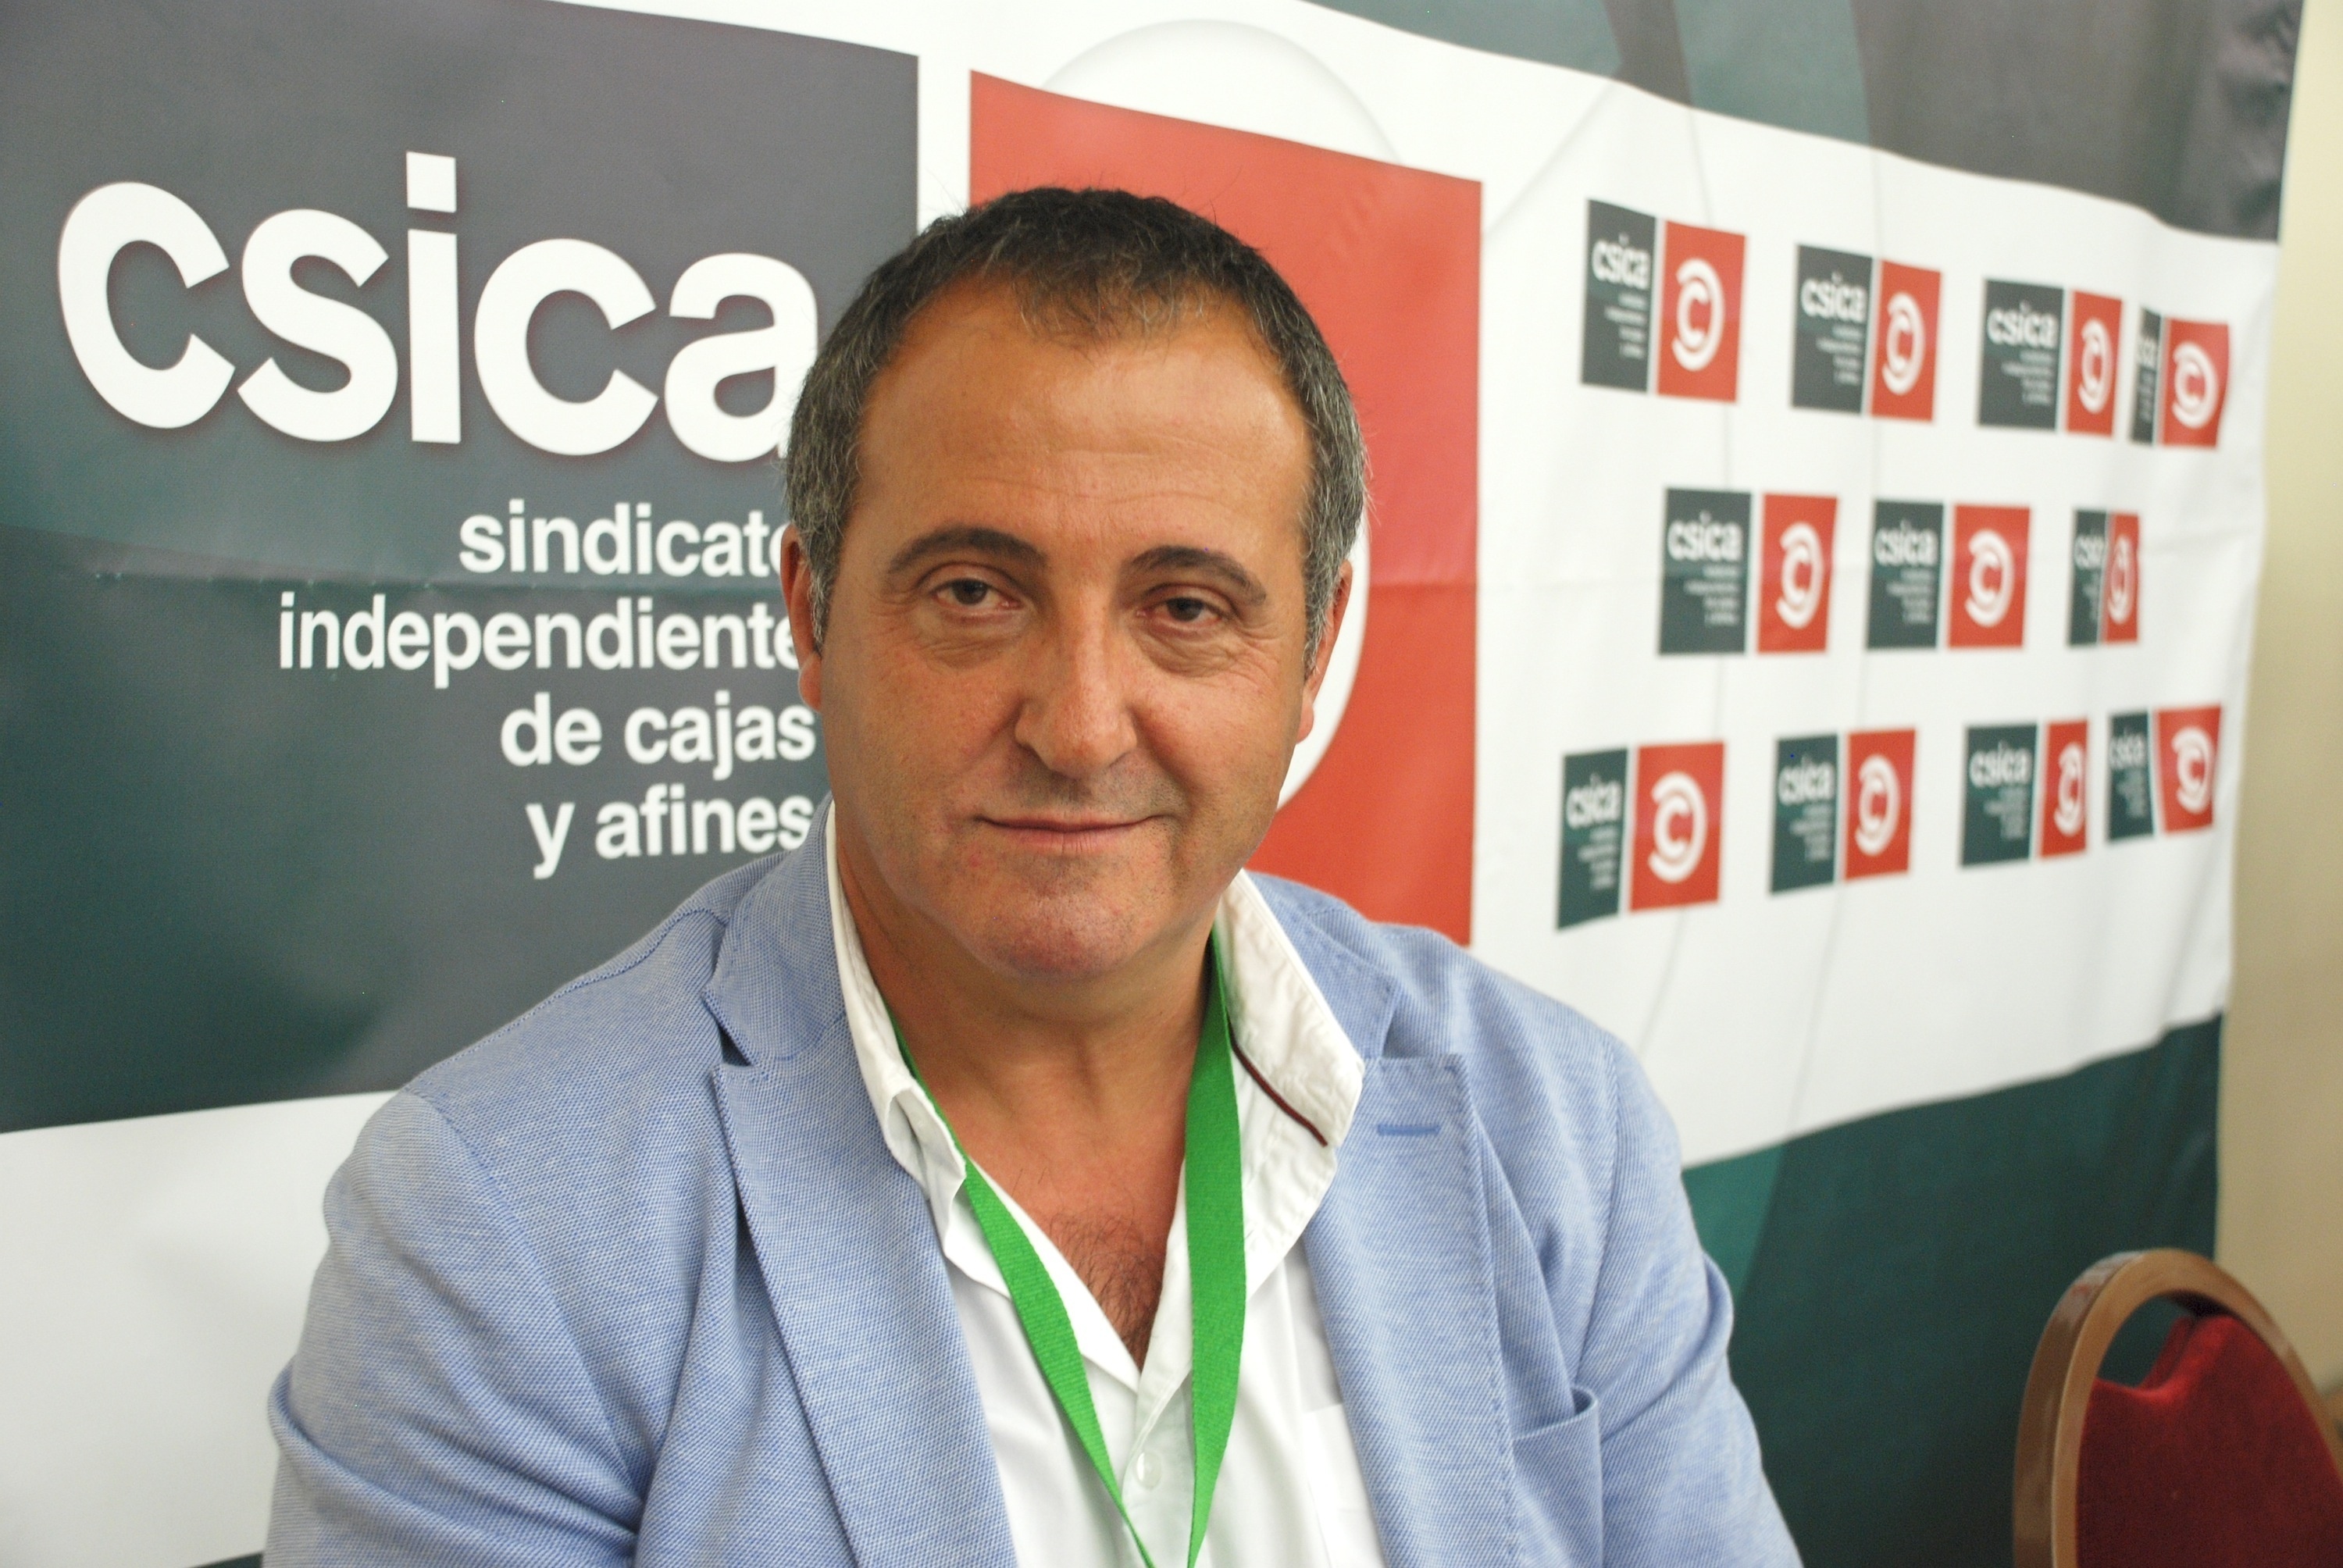 Csica elige al vallisoletano Luis José Rodríguez Alfayate, de Banco Ceiss, como nuevo presidente